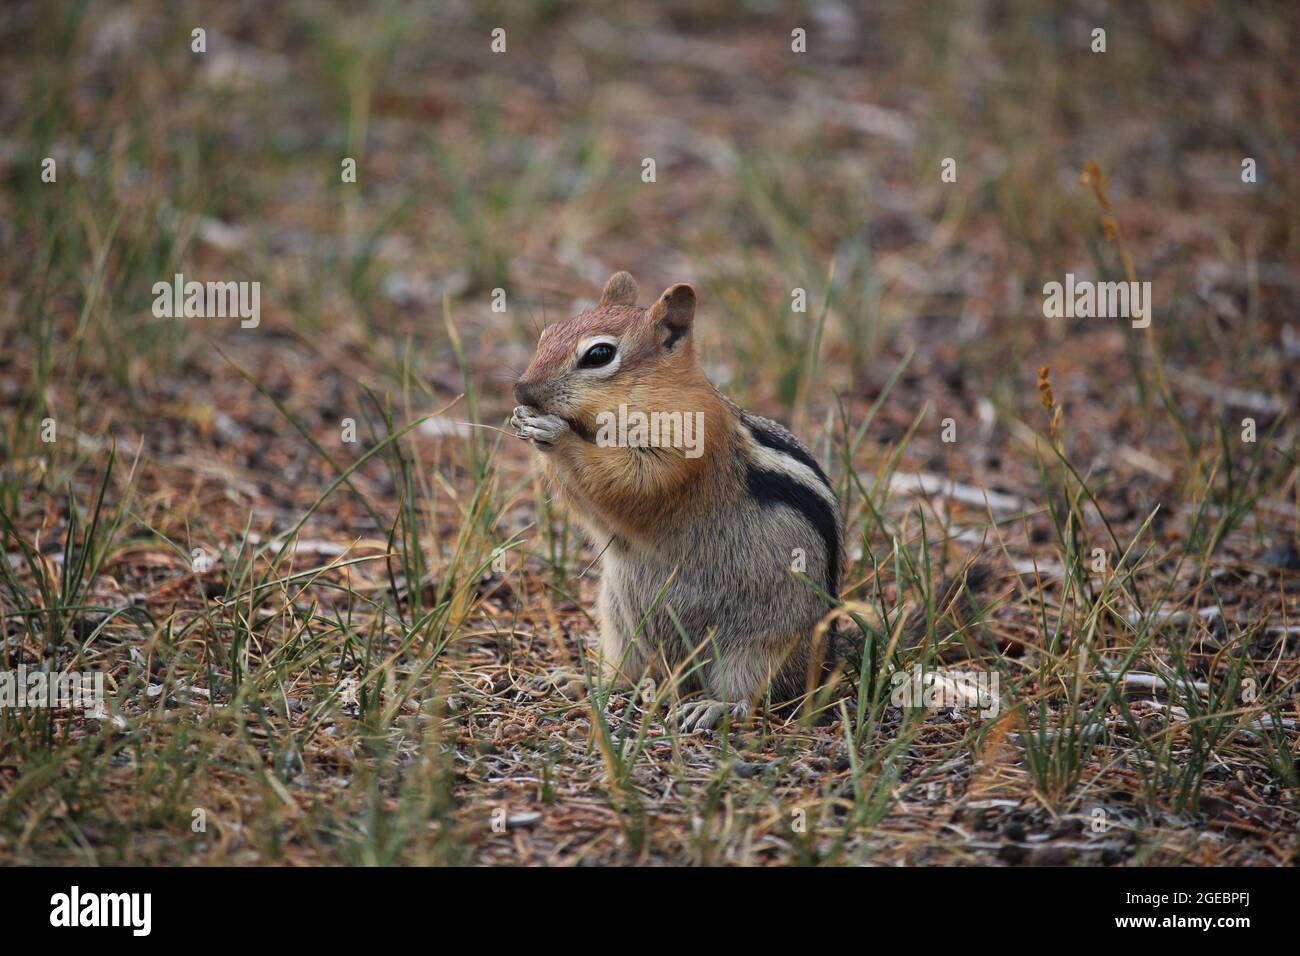 Écureuil de terre de mangé doré dans l'herbe Banque D'Images